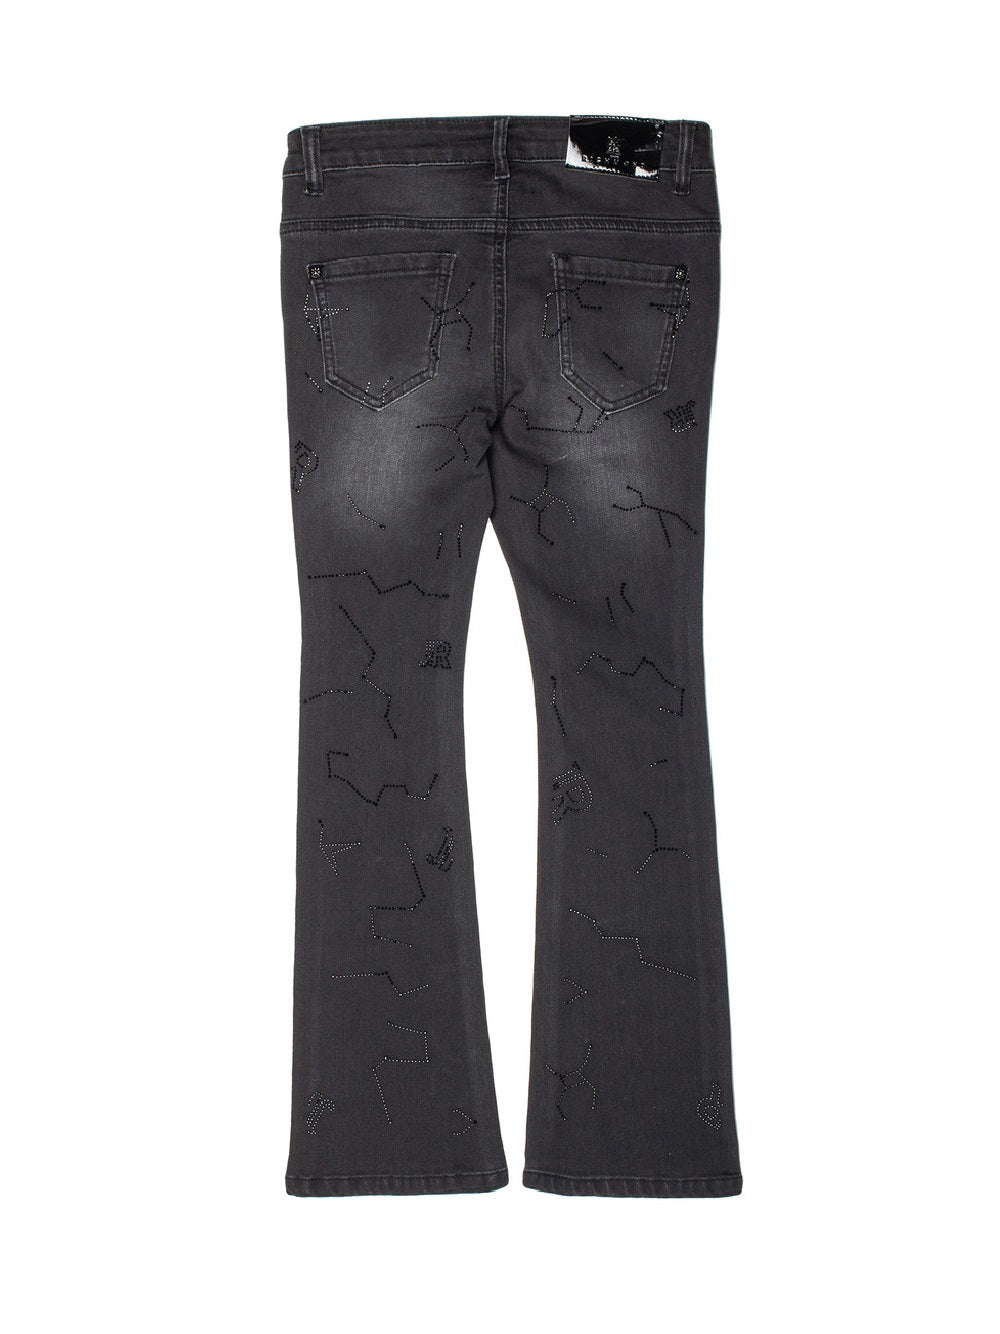 Jeans John Richmond modello RGA19272JE con disegni in paillettes